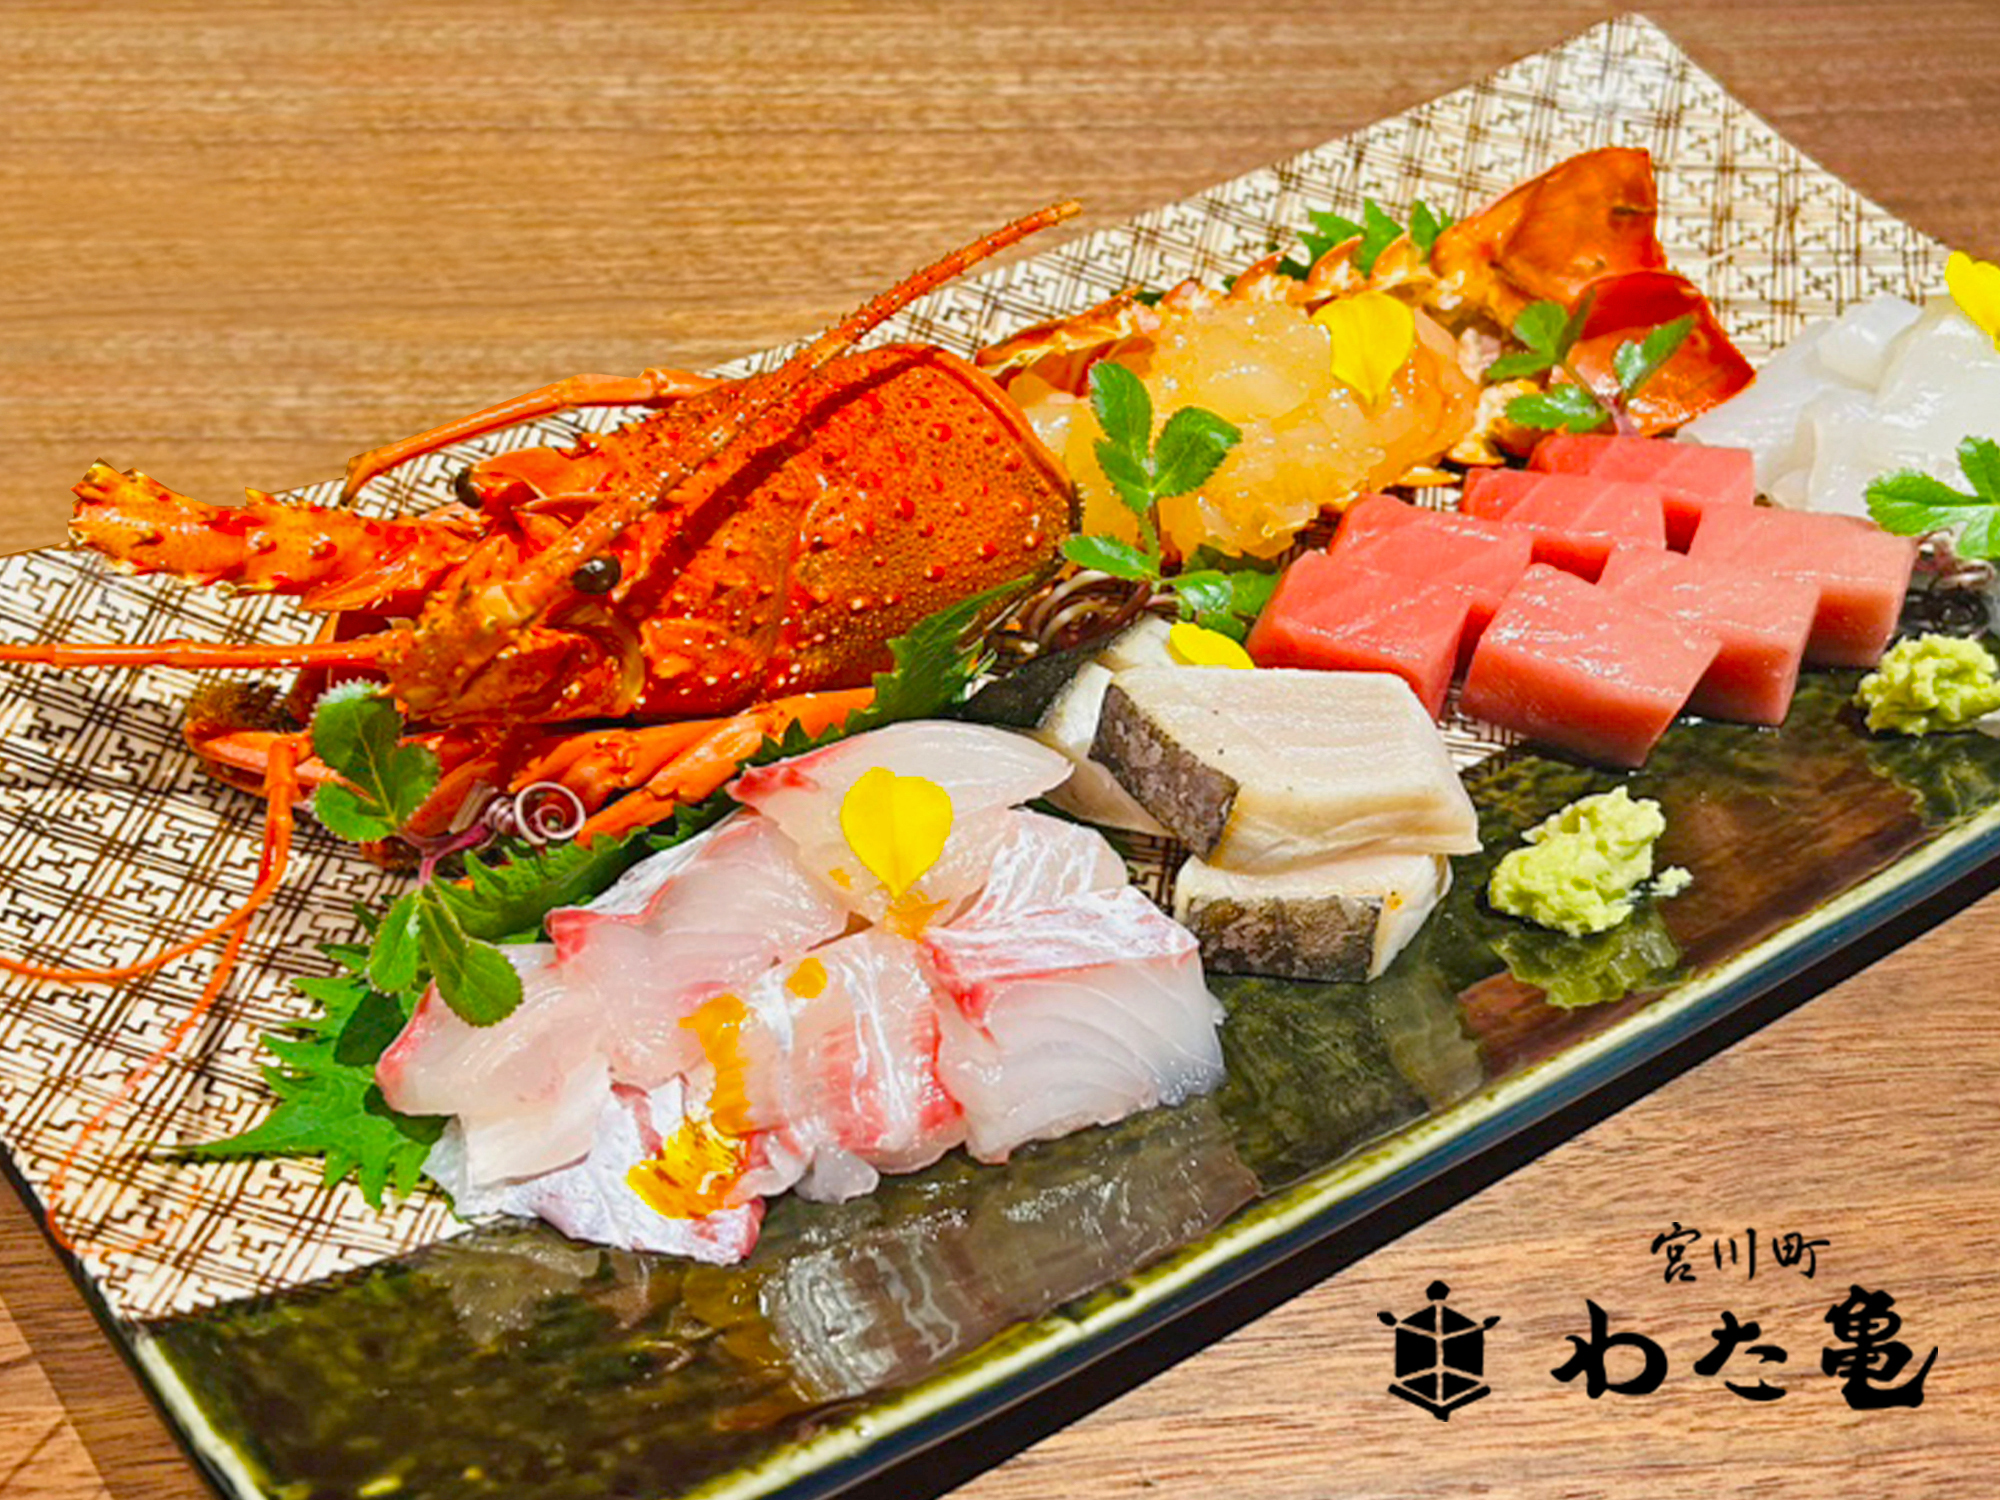 京都の最高級宿×老舗京料理店がコラボ！
贅を尽くした1名様20万円～の夕食ケータリングプランがスタート　
11名の料理人から選べるサービスも！